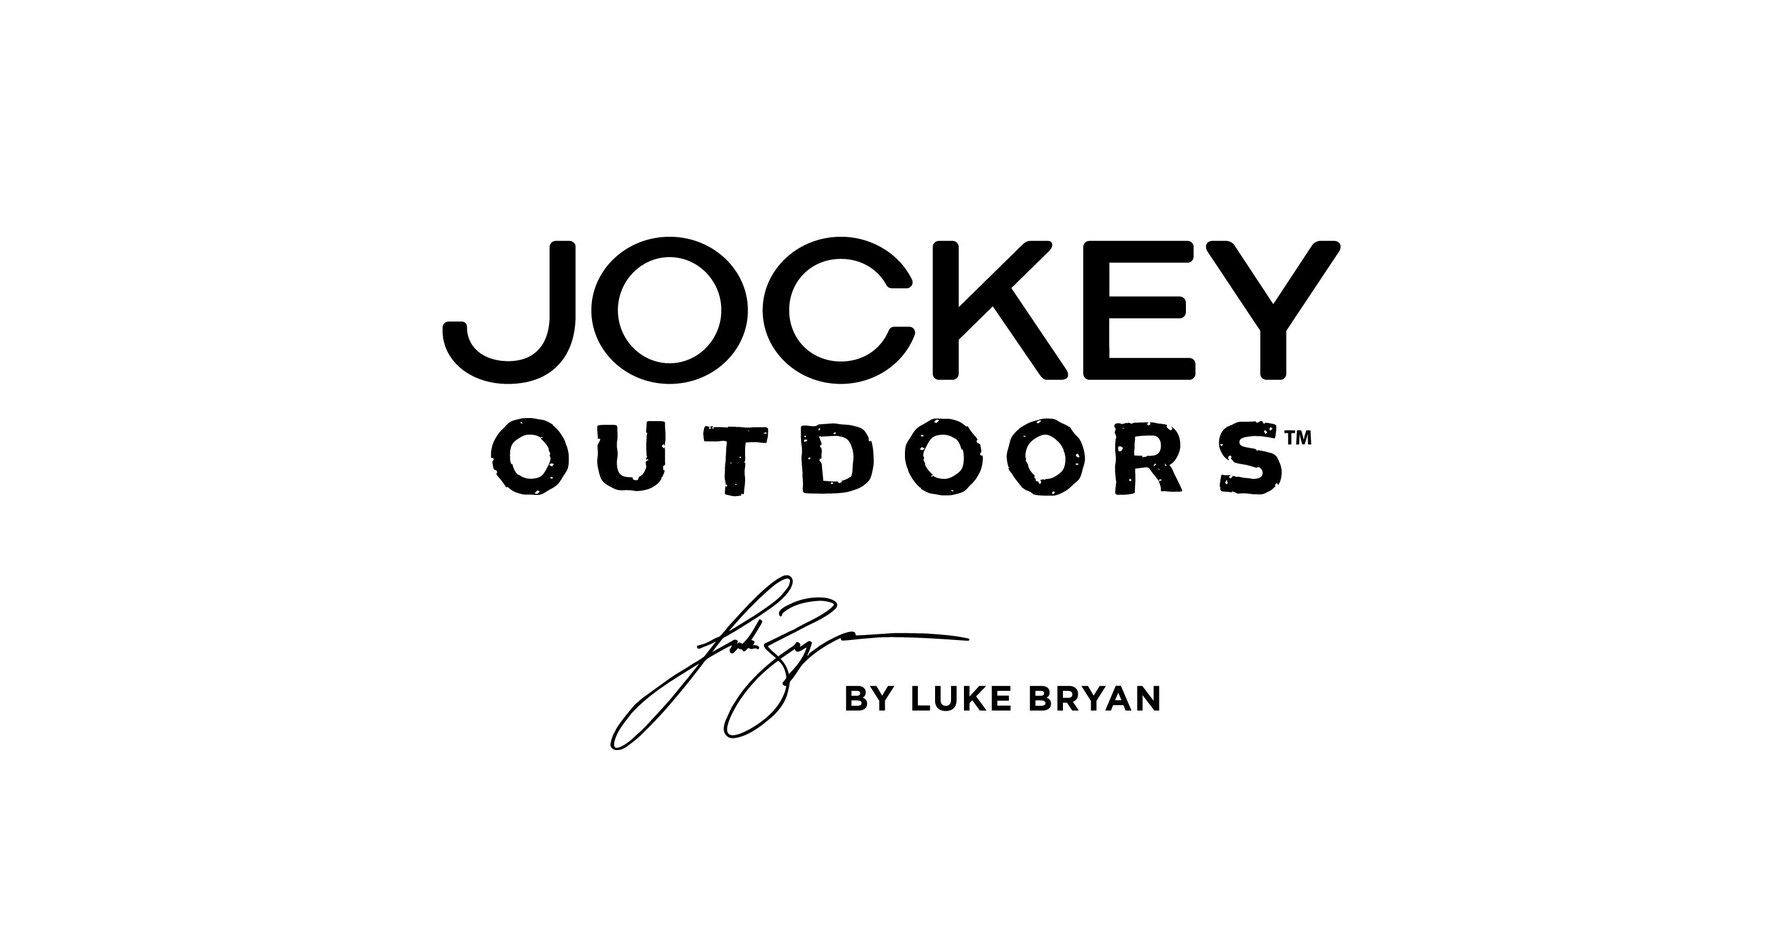 https://mma.prnewswire.com/media/1921730/Jockey_Outdoors_Logo_w_Luke.jpg?p=facebook